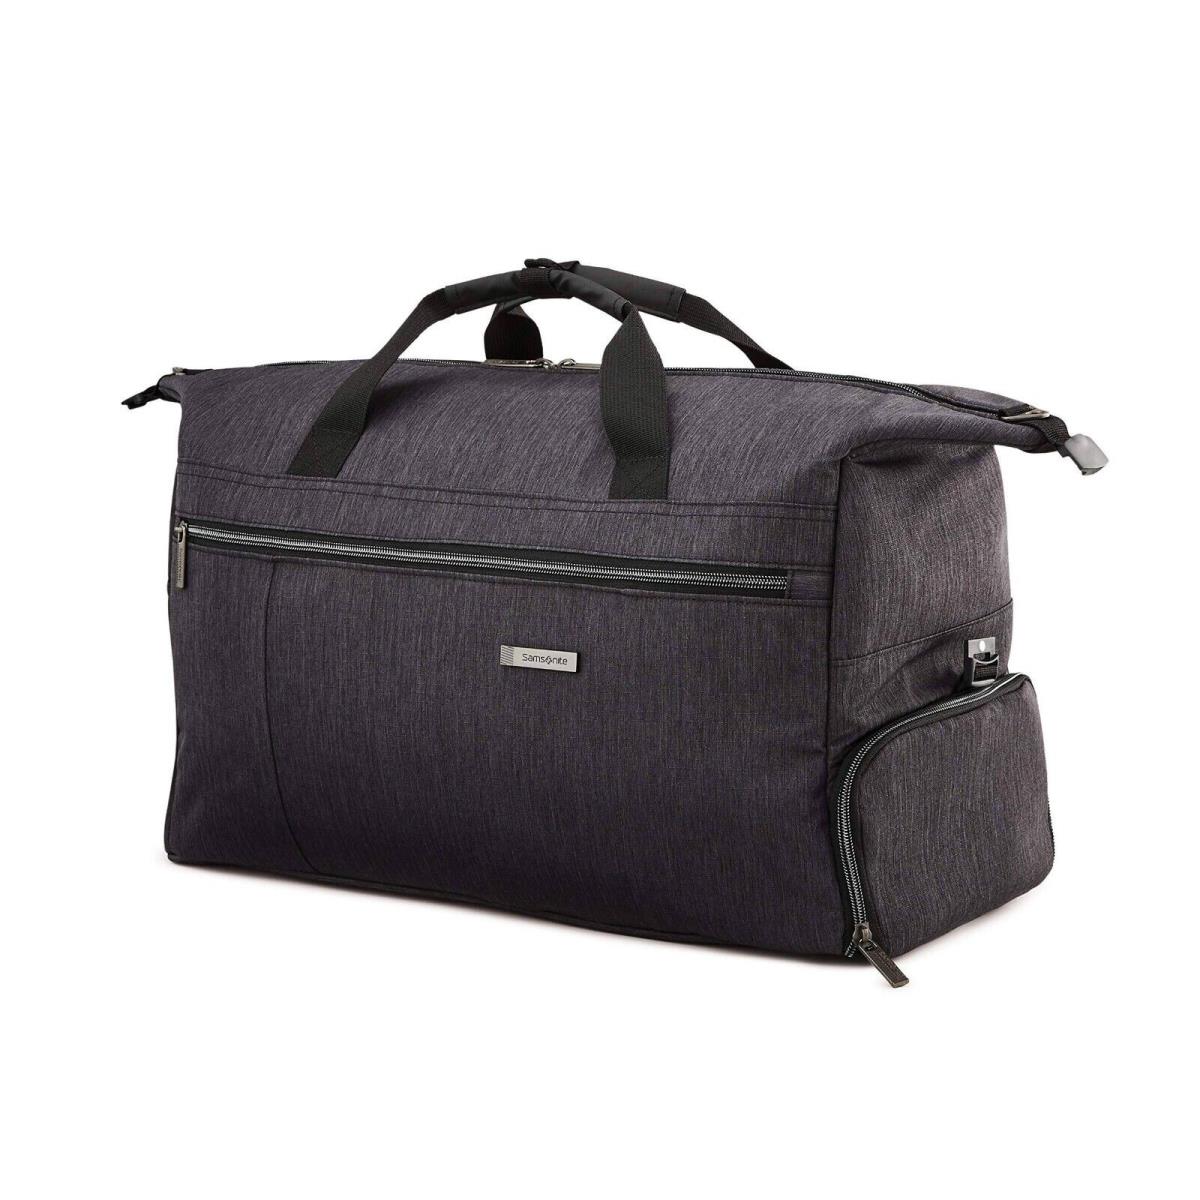 Samsonite Modern Utility Weekender Duffel Carry-on Bag Charcoal